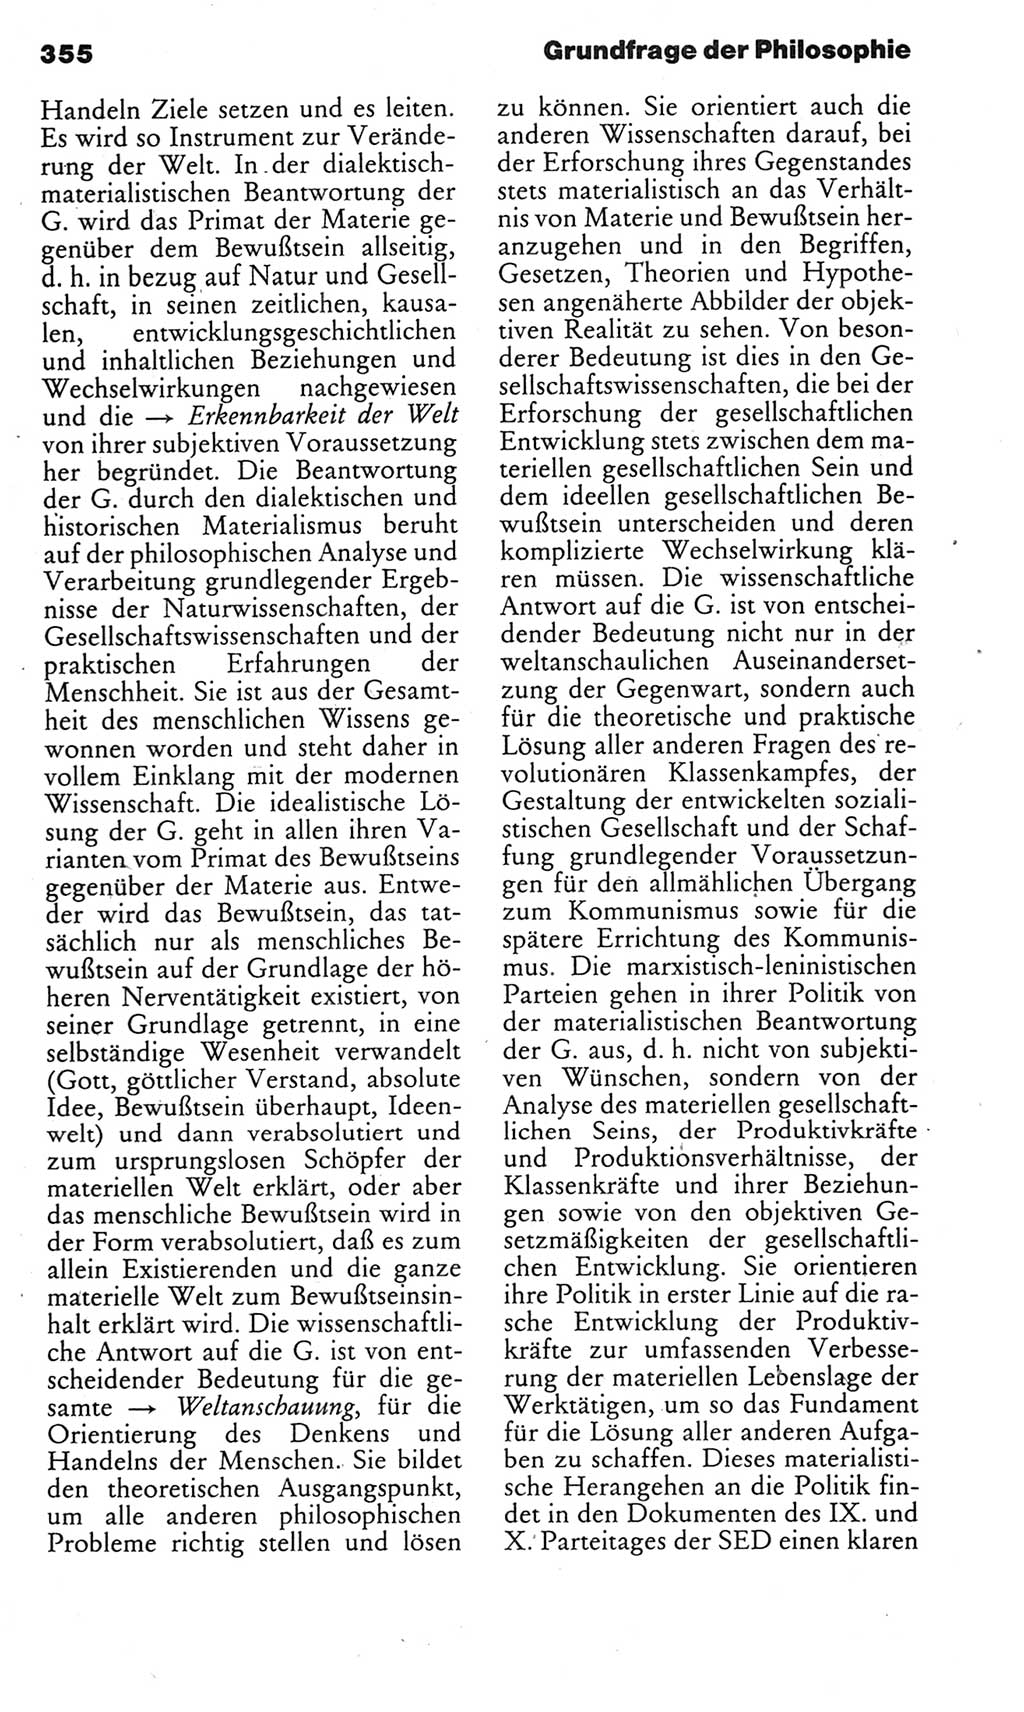 Kleines politisches Wörterbuch [Deutsche Demokratische Republik (DDR)] 1985, Seite 355 (Kl. pol. Wb. DDR 1985, S. 355)